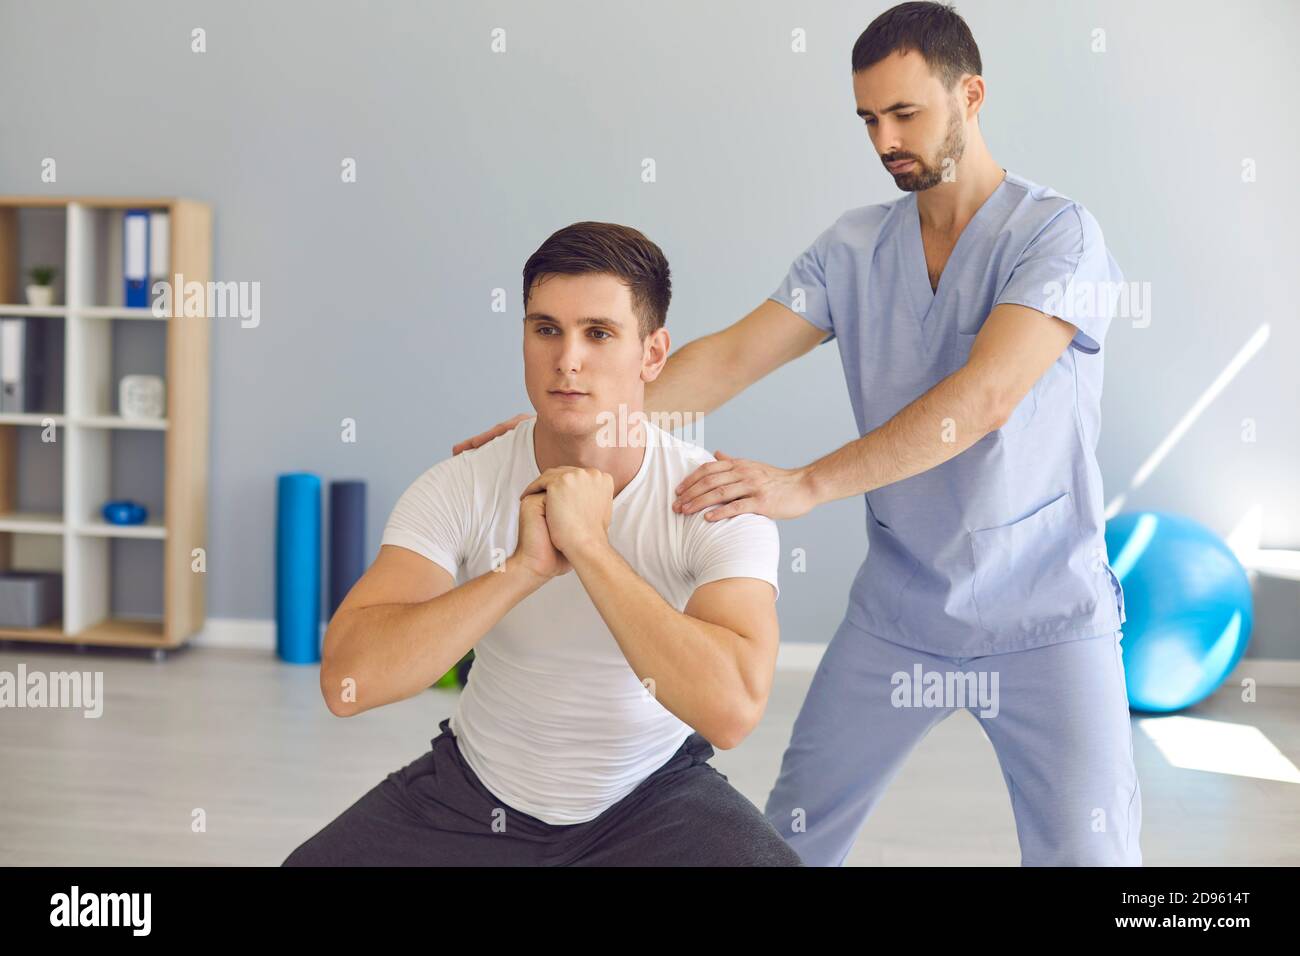 Physiothérapeute aidant les jeunes athlètes à faire des squats pendant la thérapie de réadaptation après blessures sportives Banque D'Images